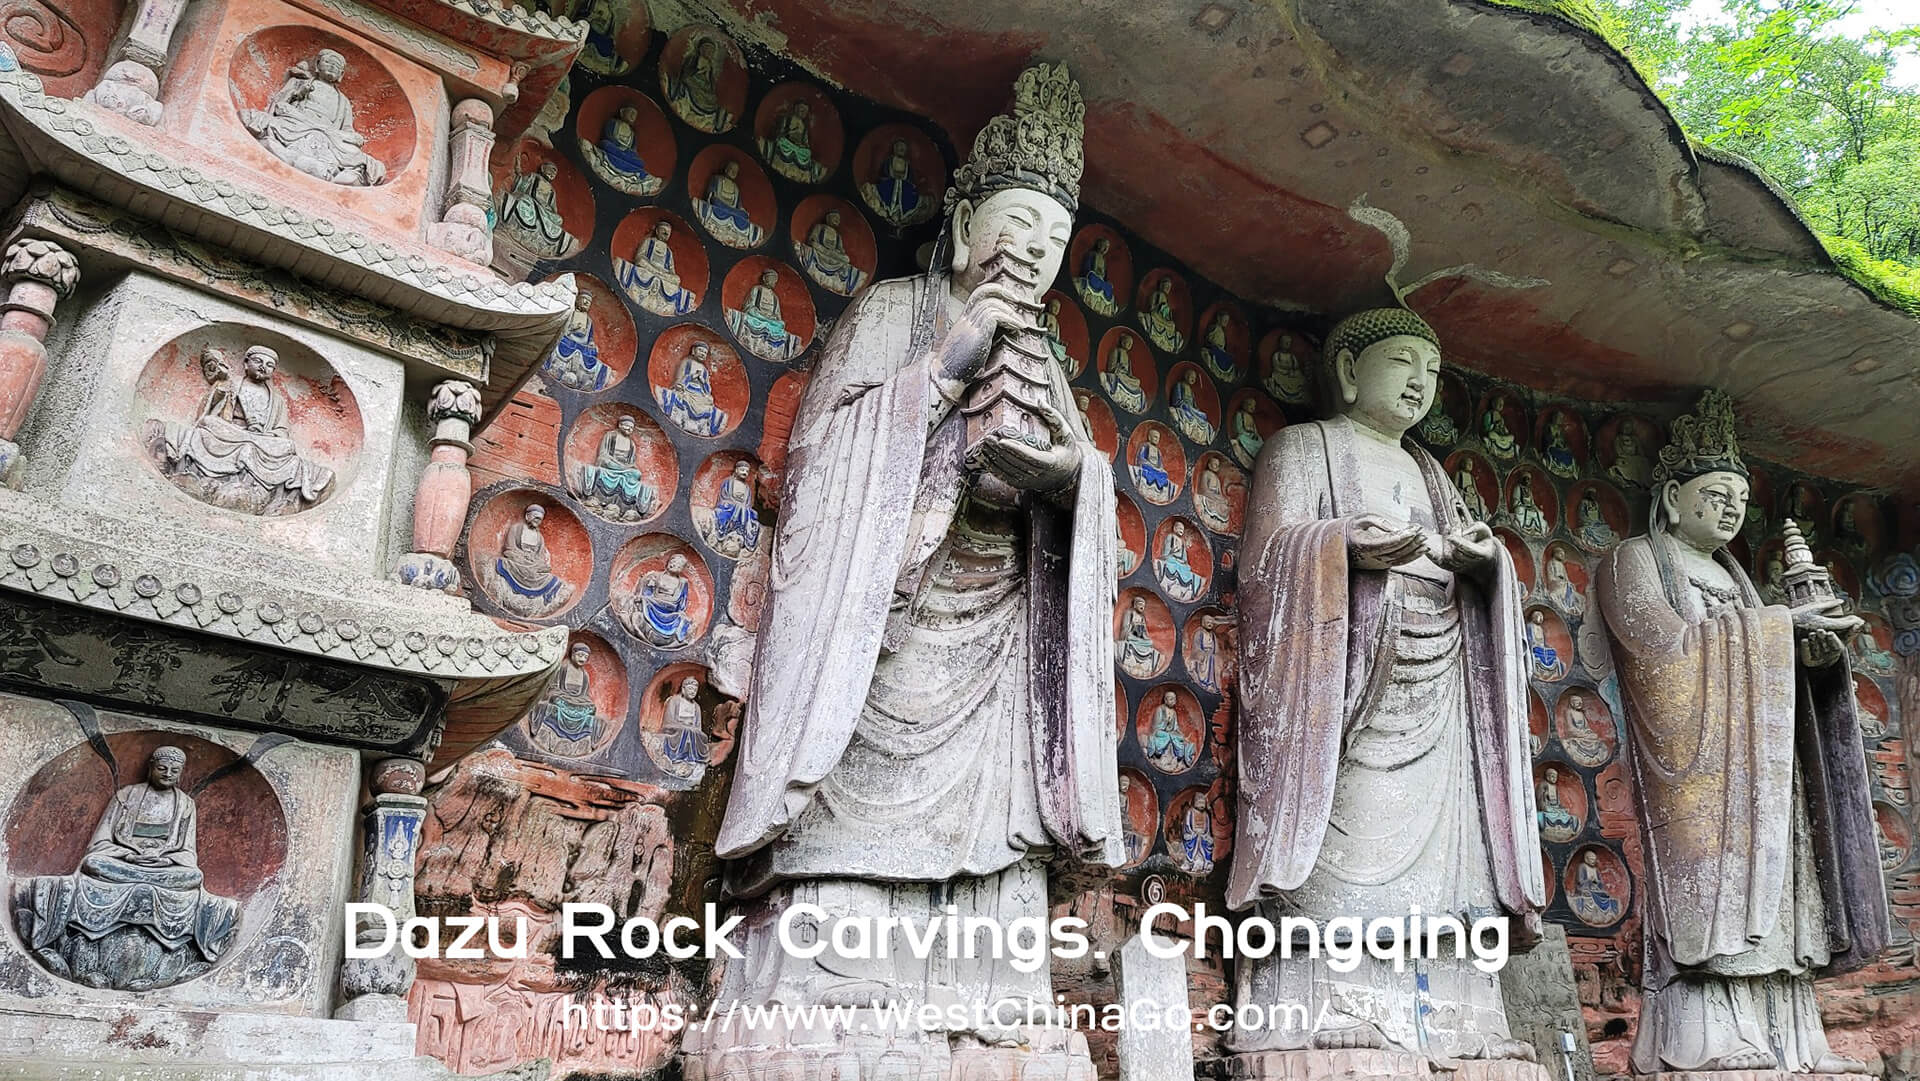 Chongqing Dazu Rock Carvings